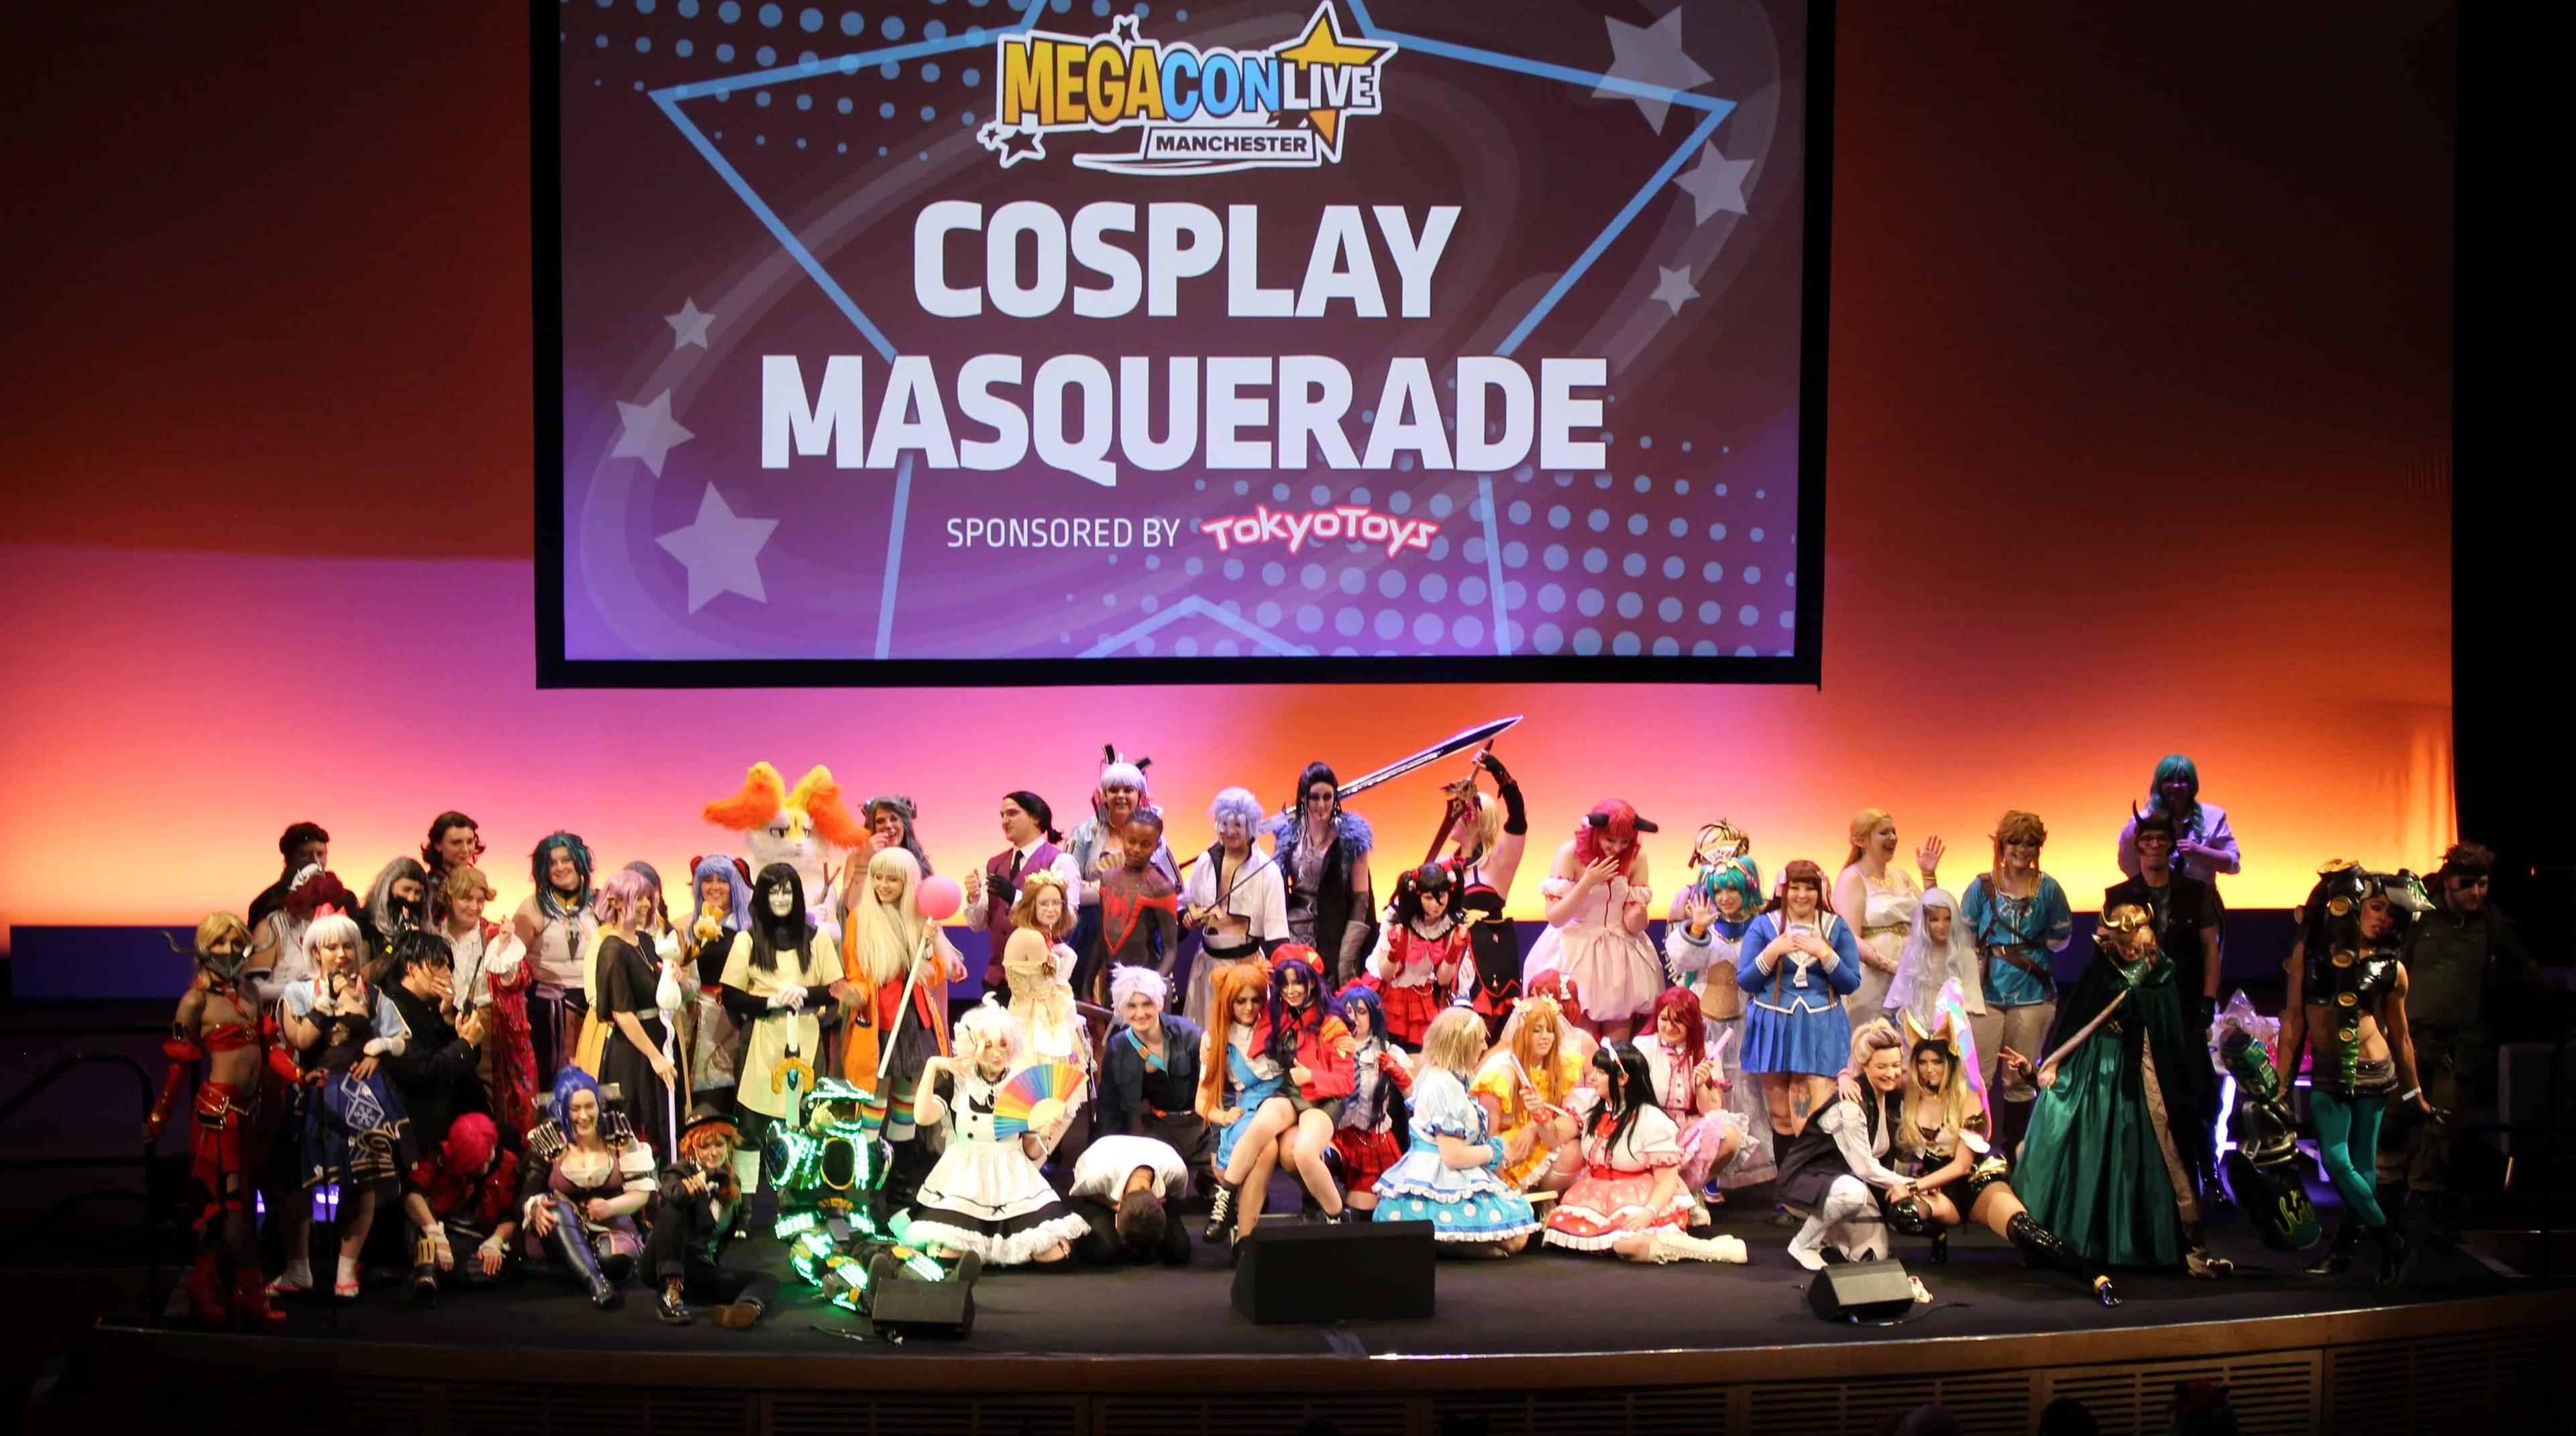 The cosplay masquerade at MegaCon Live